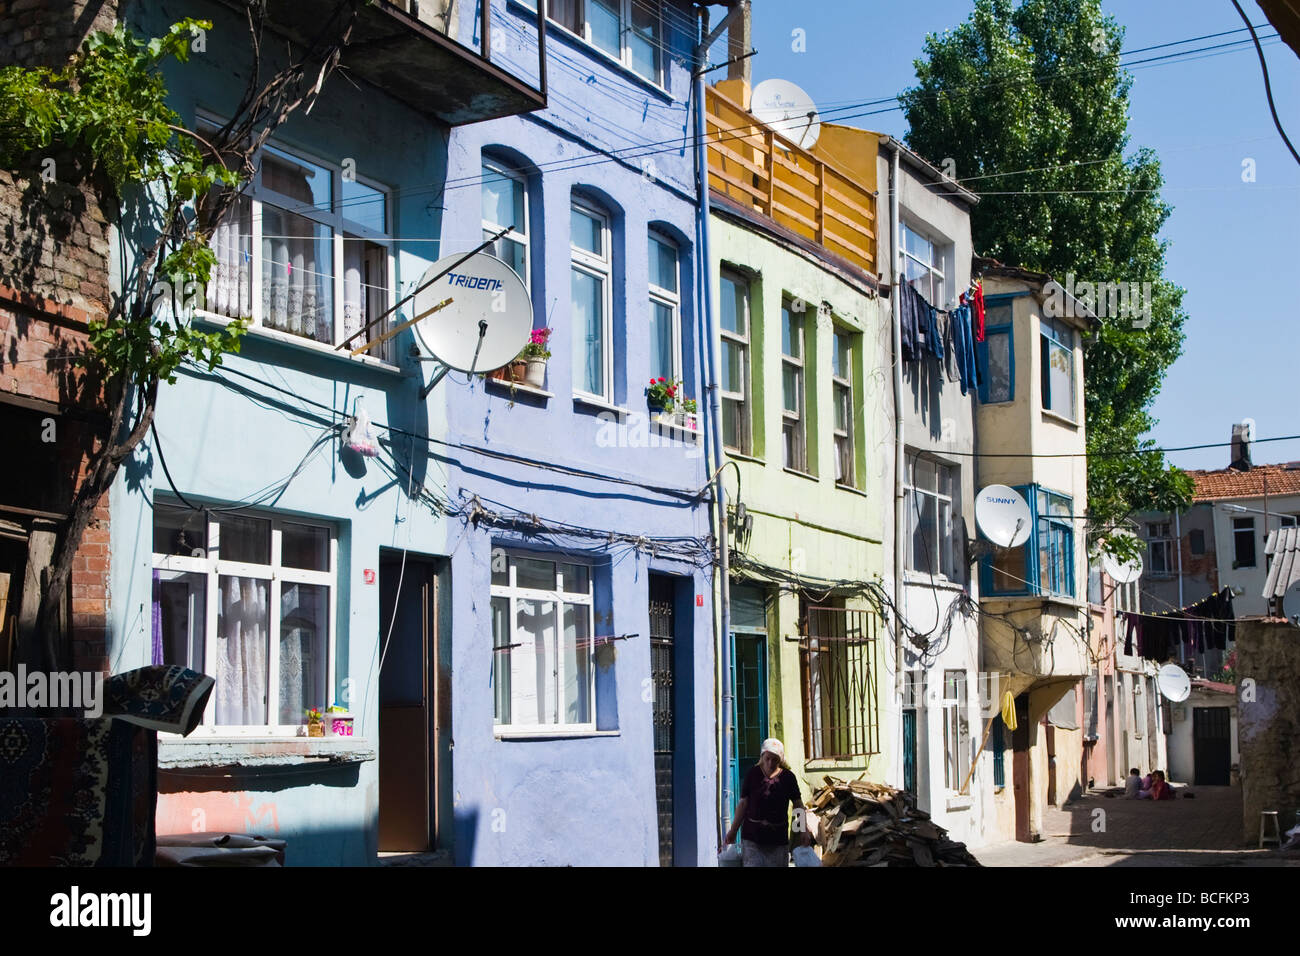 Türkei, Istanbul, typische Straße in der Altstadt mit Häusern in mehreren hellen Pastellfarben, alle mit Satellitenschüsseln lackiert Stockfoto